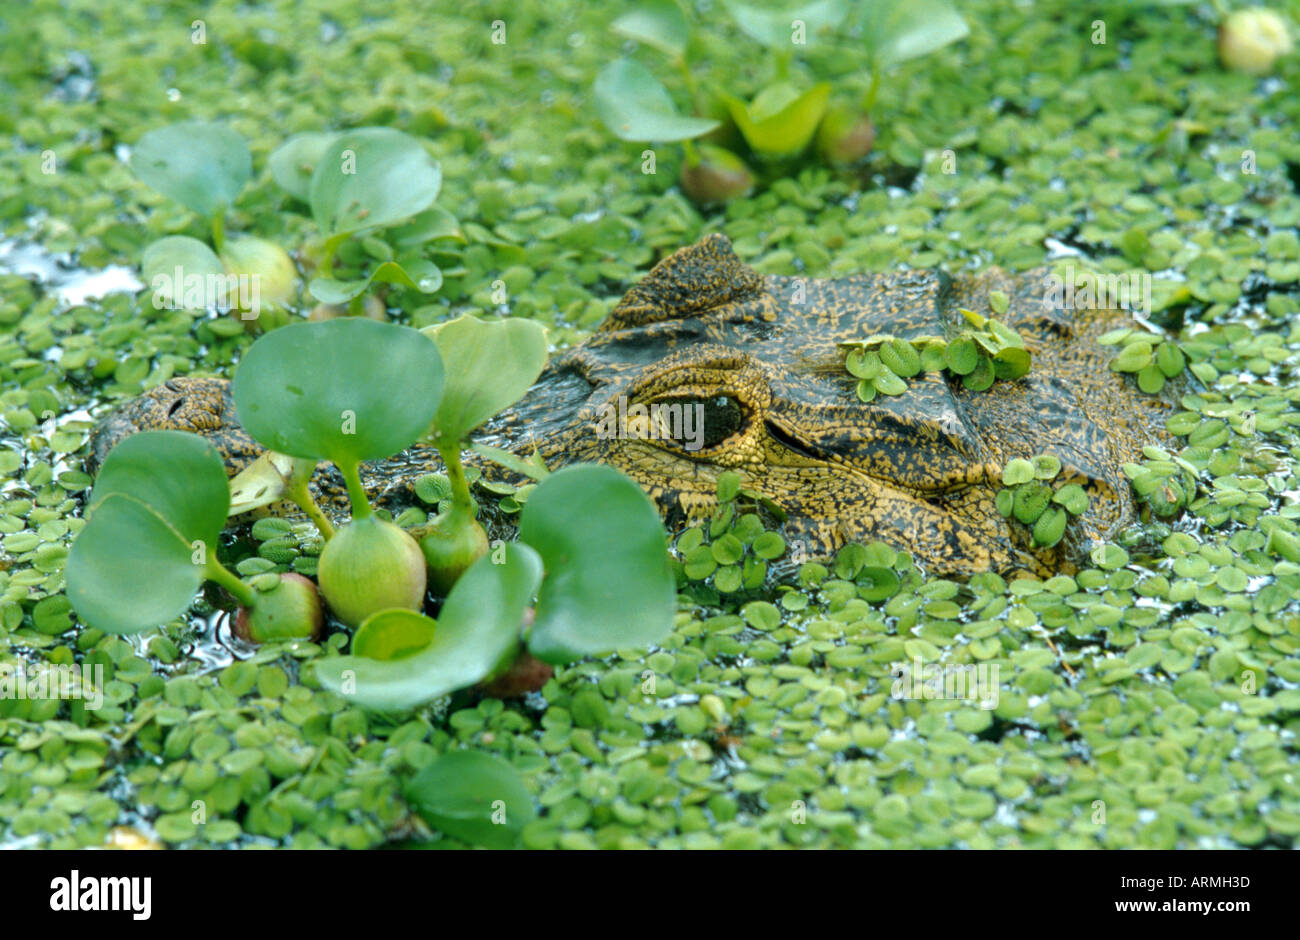 Babas (Caiman crocodilus), retrato, oculto entre plantas acuáticas (Eichhornia, Salvinia) Foto de stock